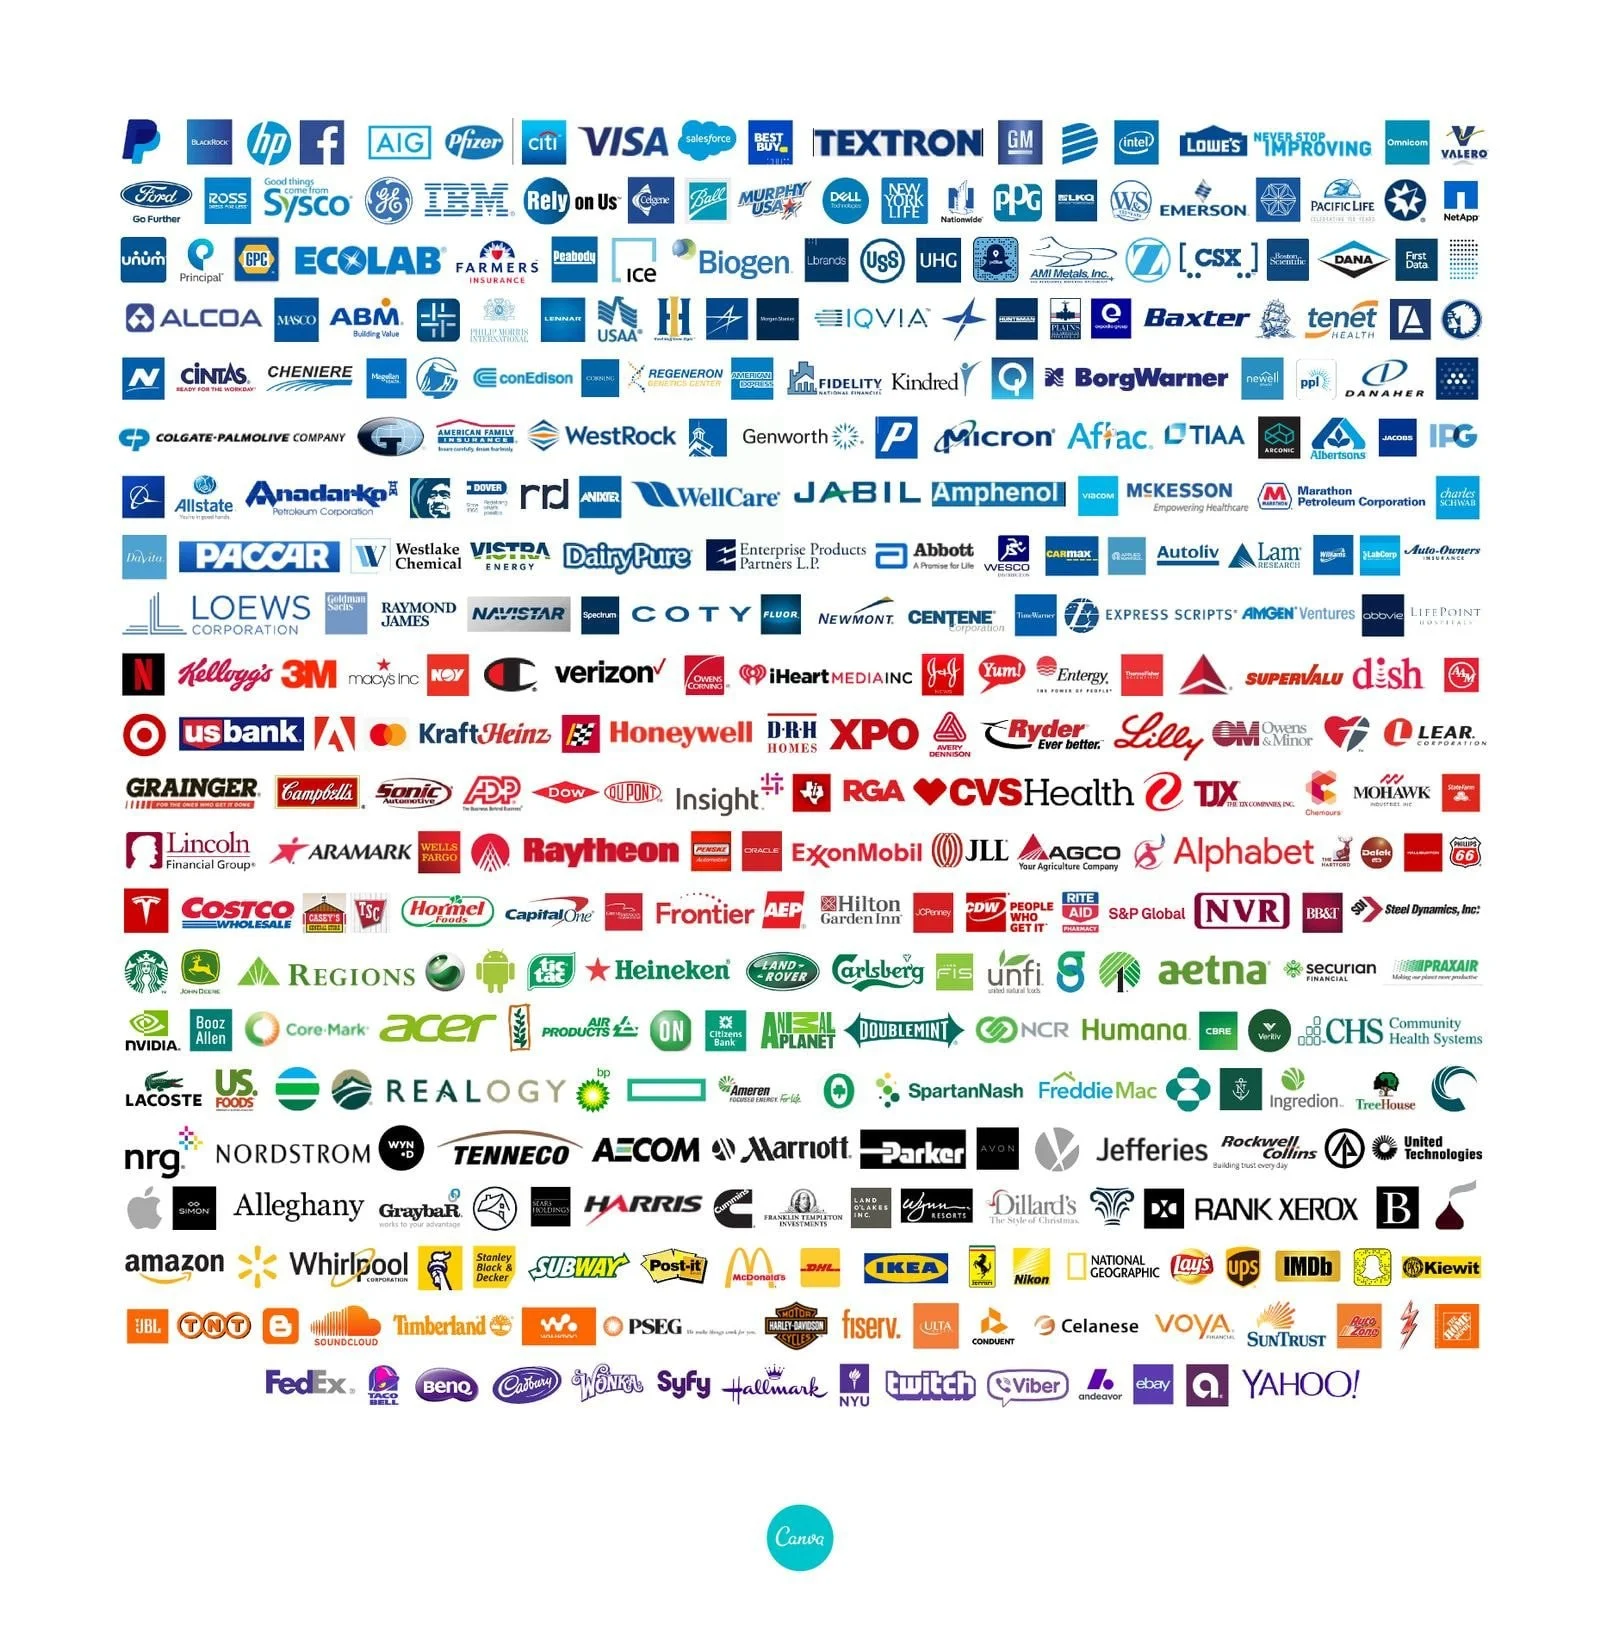 CanvaによるFORTUNE 500企業のロゴカラー割合分析